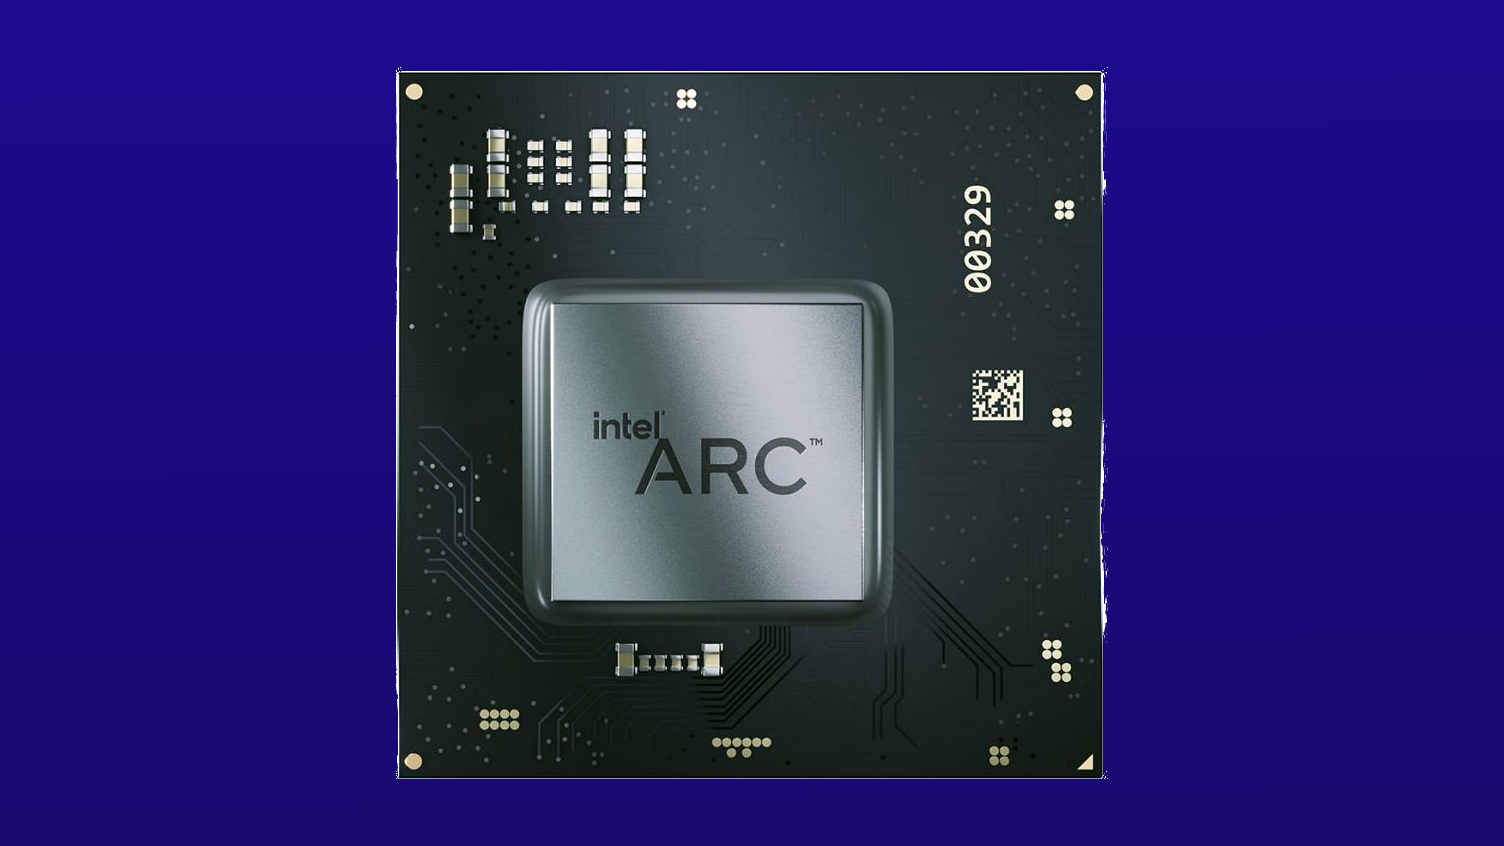 Intel Arc laptop GPU promo image on blue background